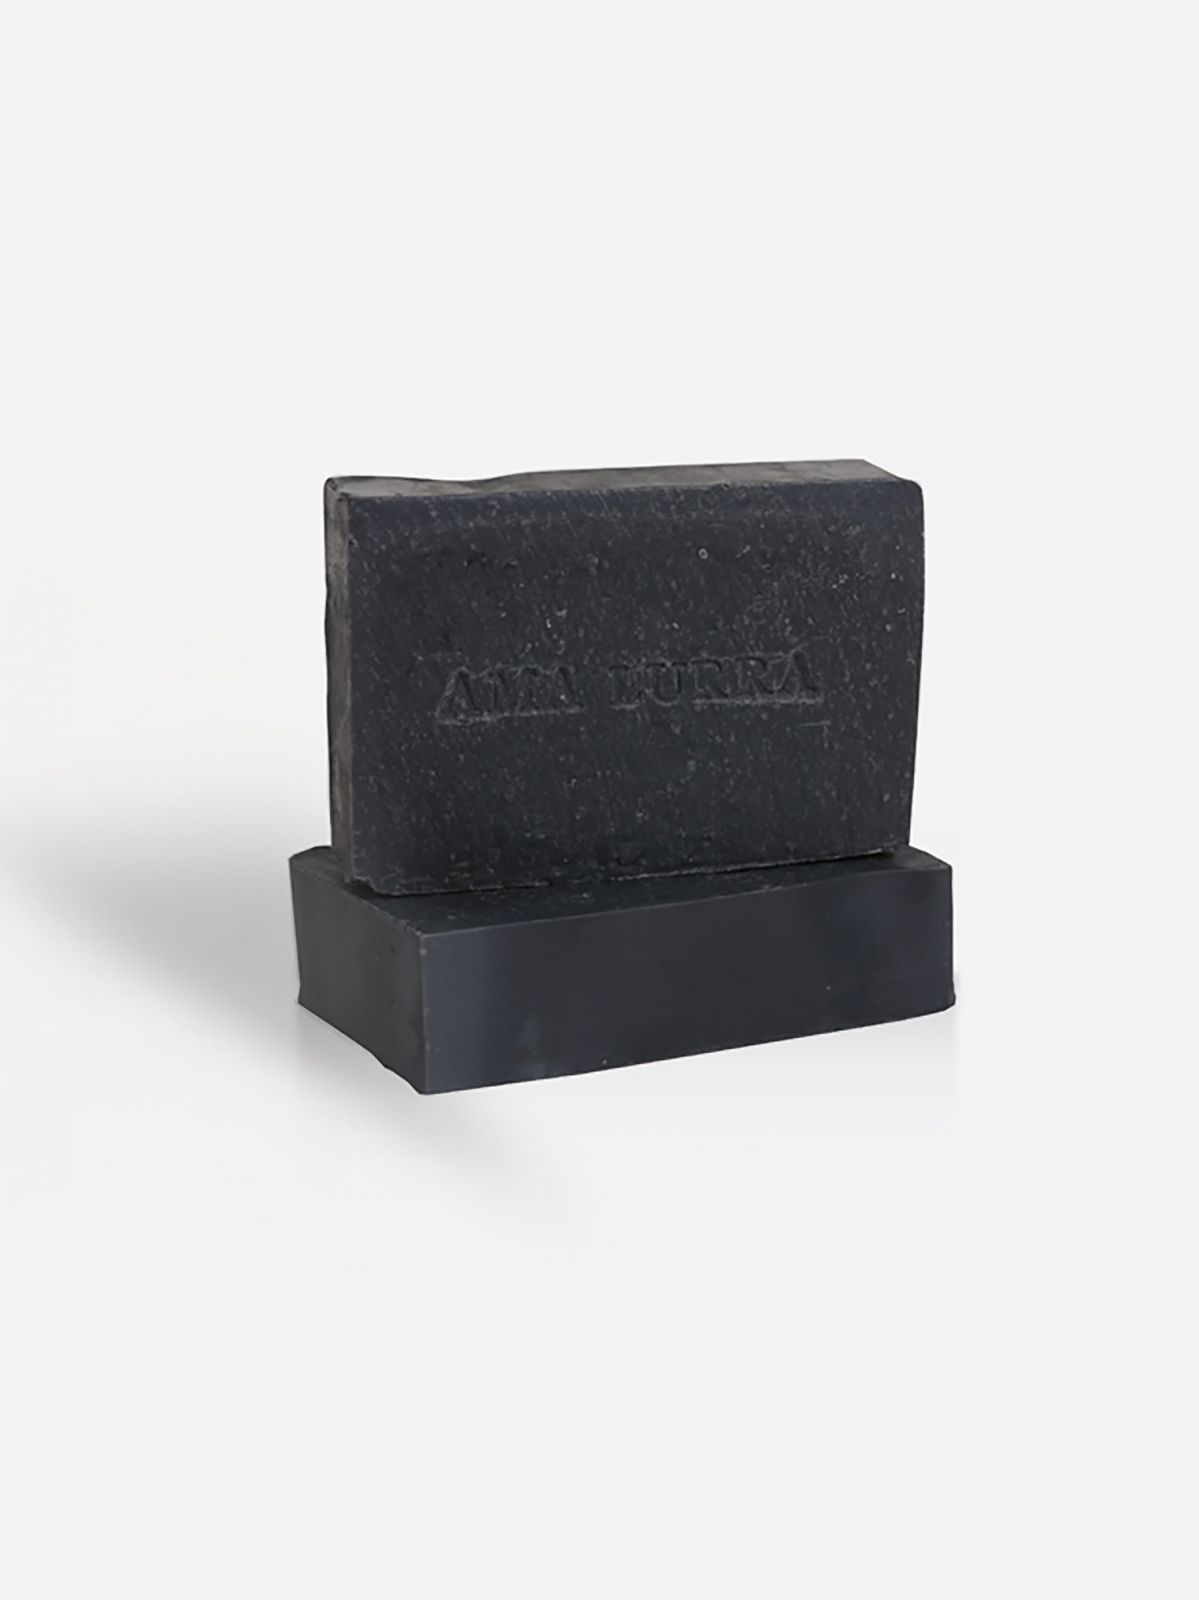  סבון טבעי פחם שחור לניקוי עמוק Natural Black Charcoal Soap של AMA LURRA